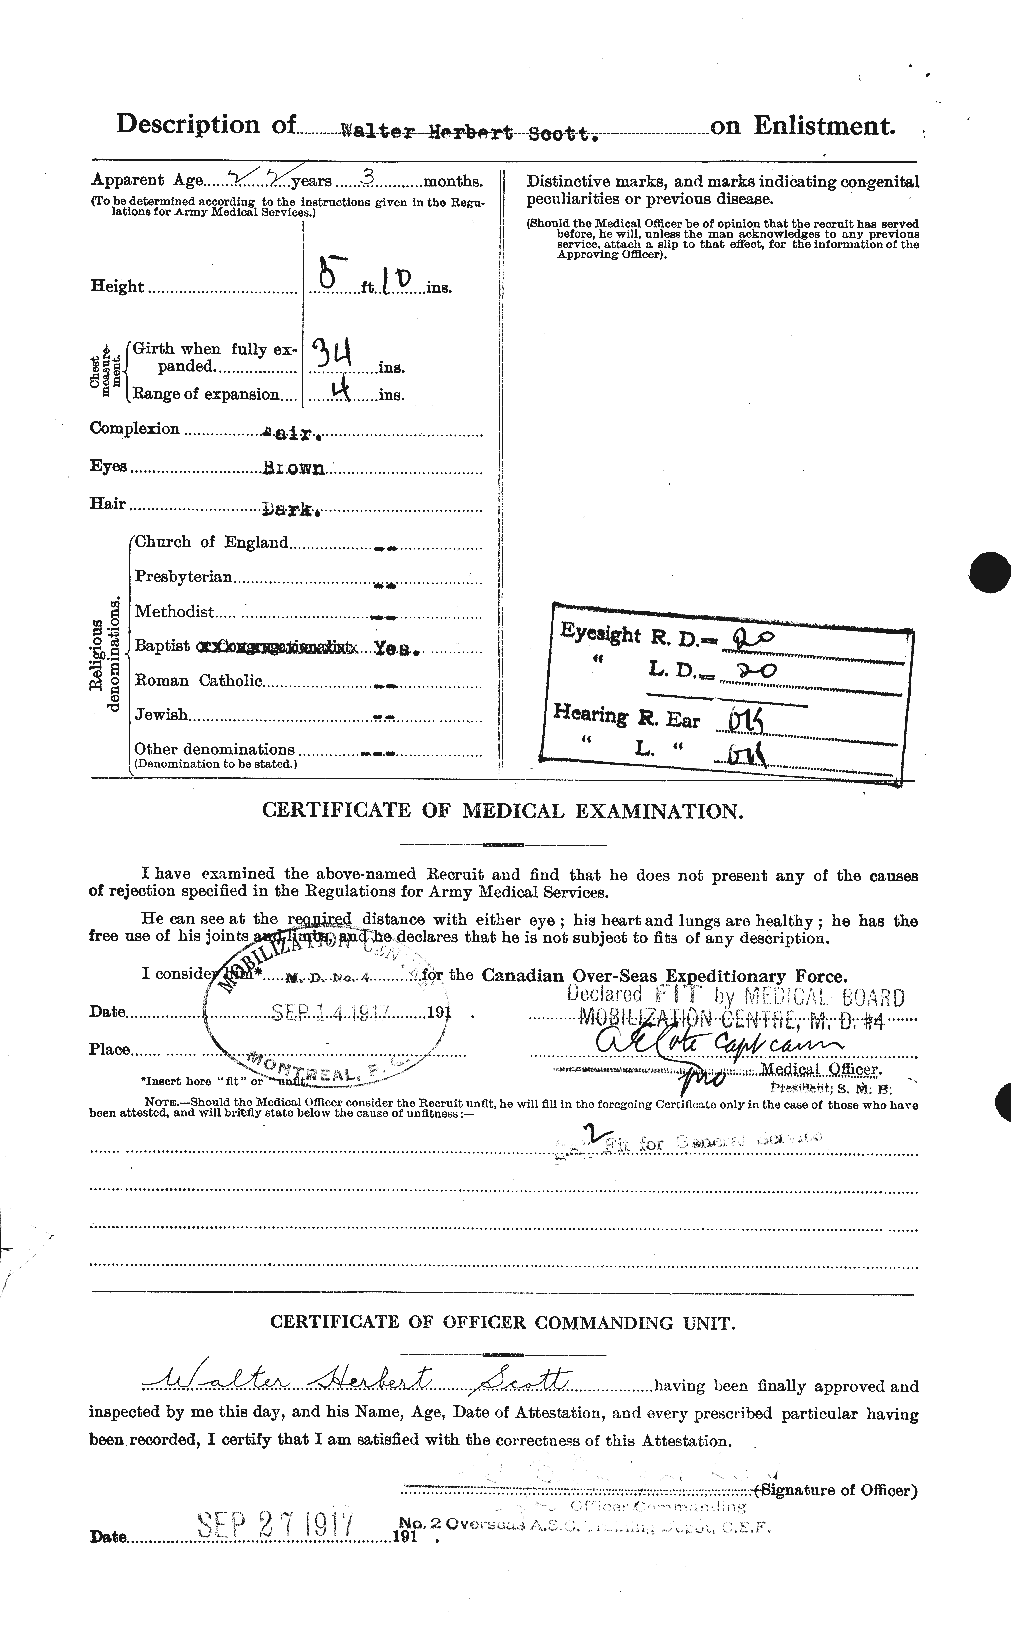 Dossiers du Personnel de la Première Guerre mondiale - CEC 087982b